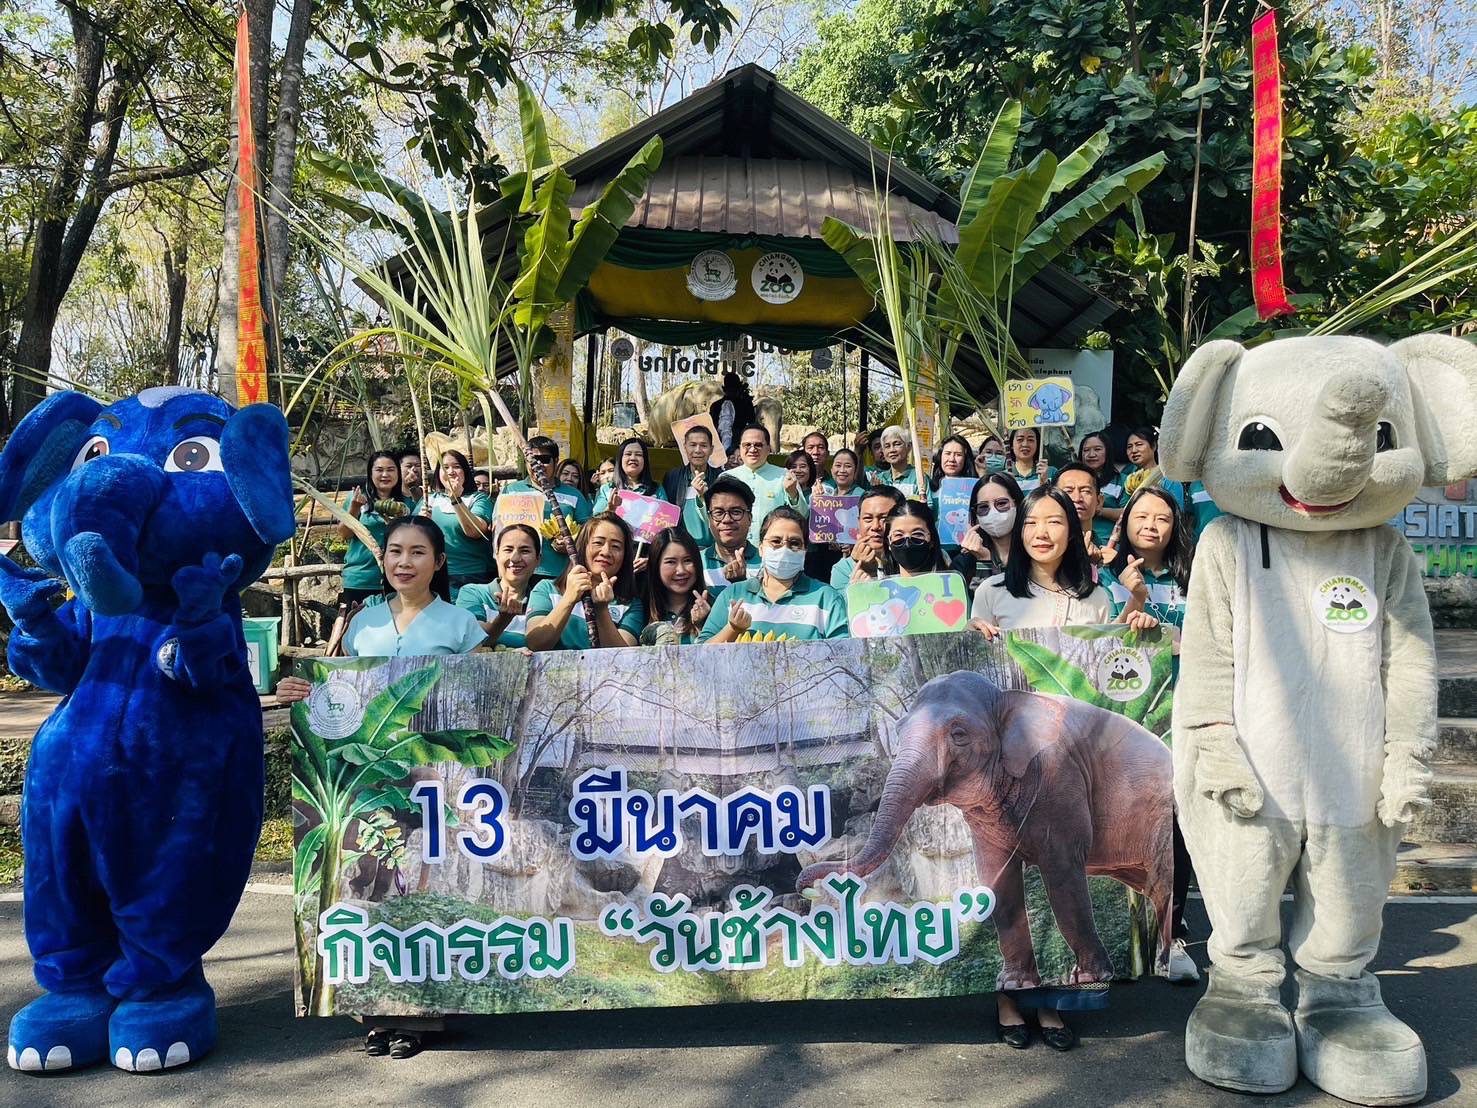 ผู้อำนวยการสวนสัตว์เชียงใหม่ มอบขันโตกอาหาร ให้น้องช้าง  ในกิจกรรมวันช้างไทย ประจำปี 2567 ณ ส่วนจัดแสดงช้างเอเชีย